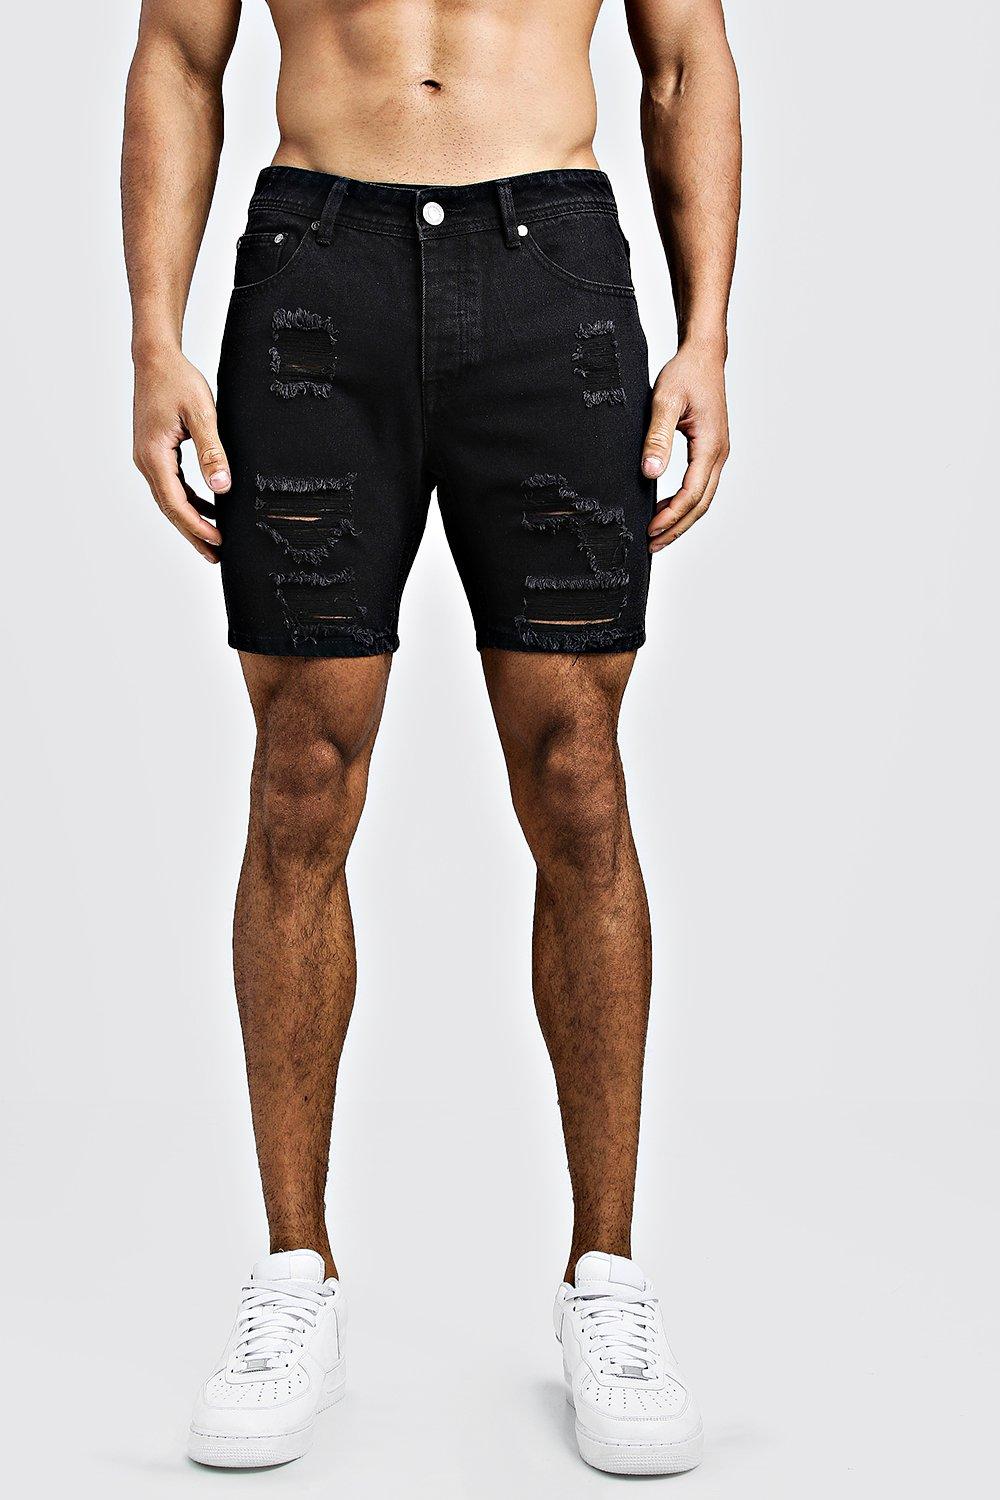 high waist levis shorts